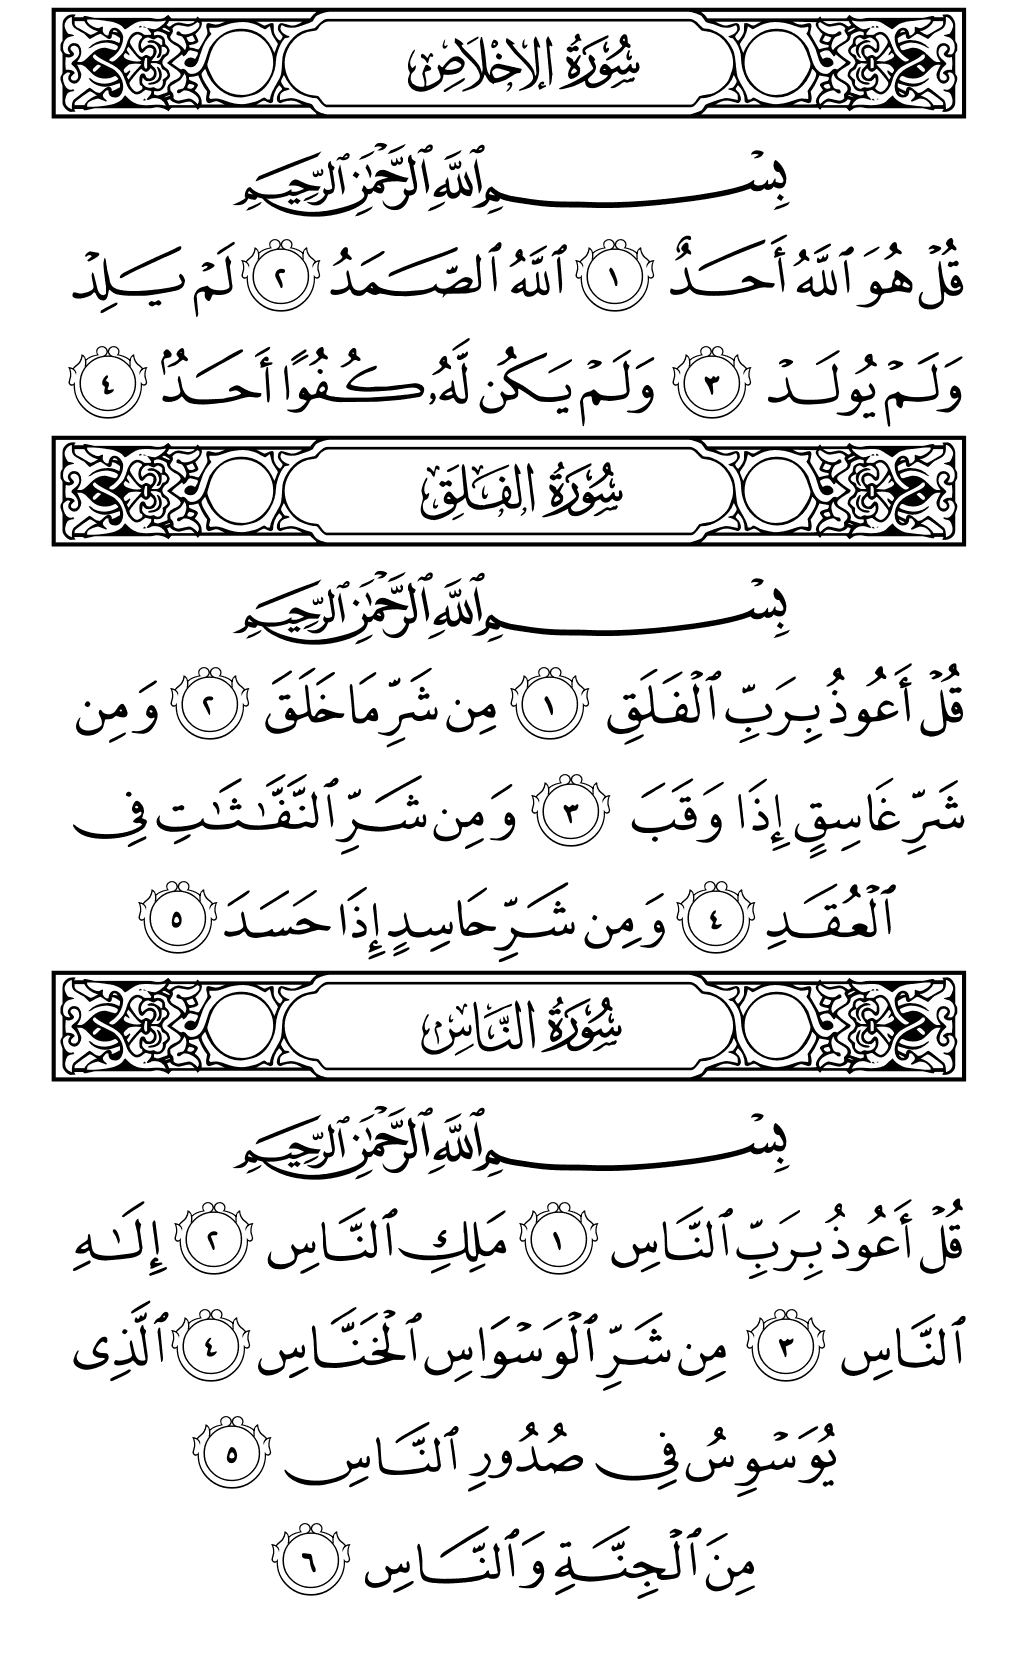 الصفحة رقم 604 من القرآن الكريم